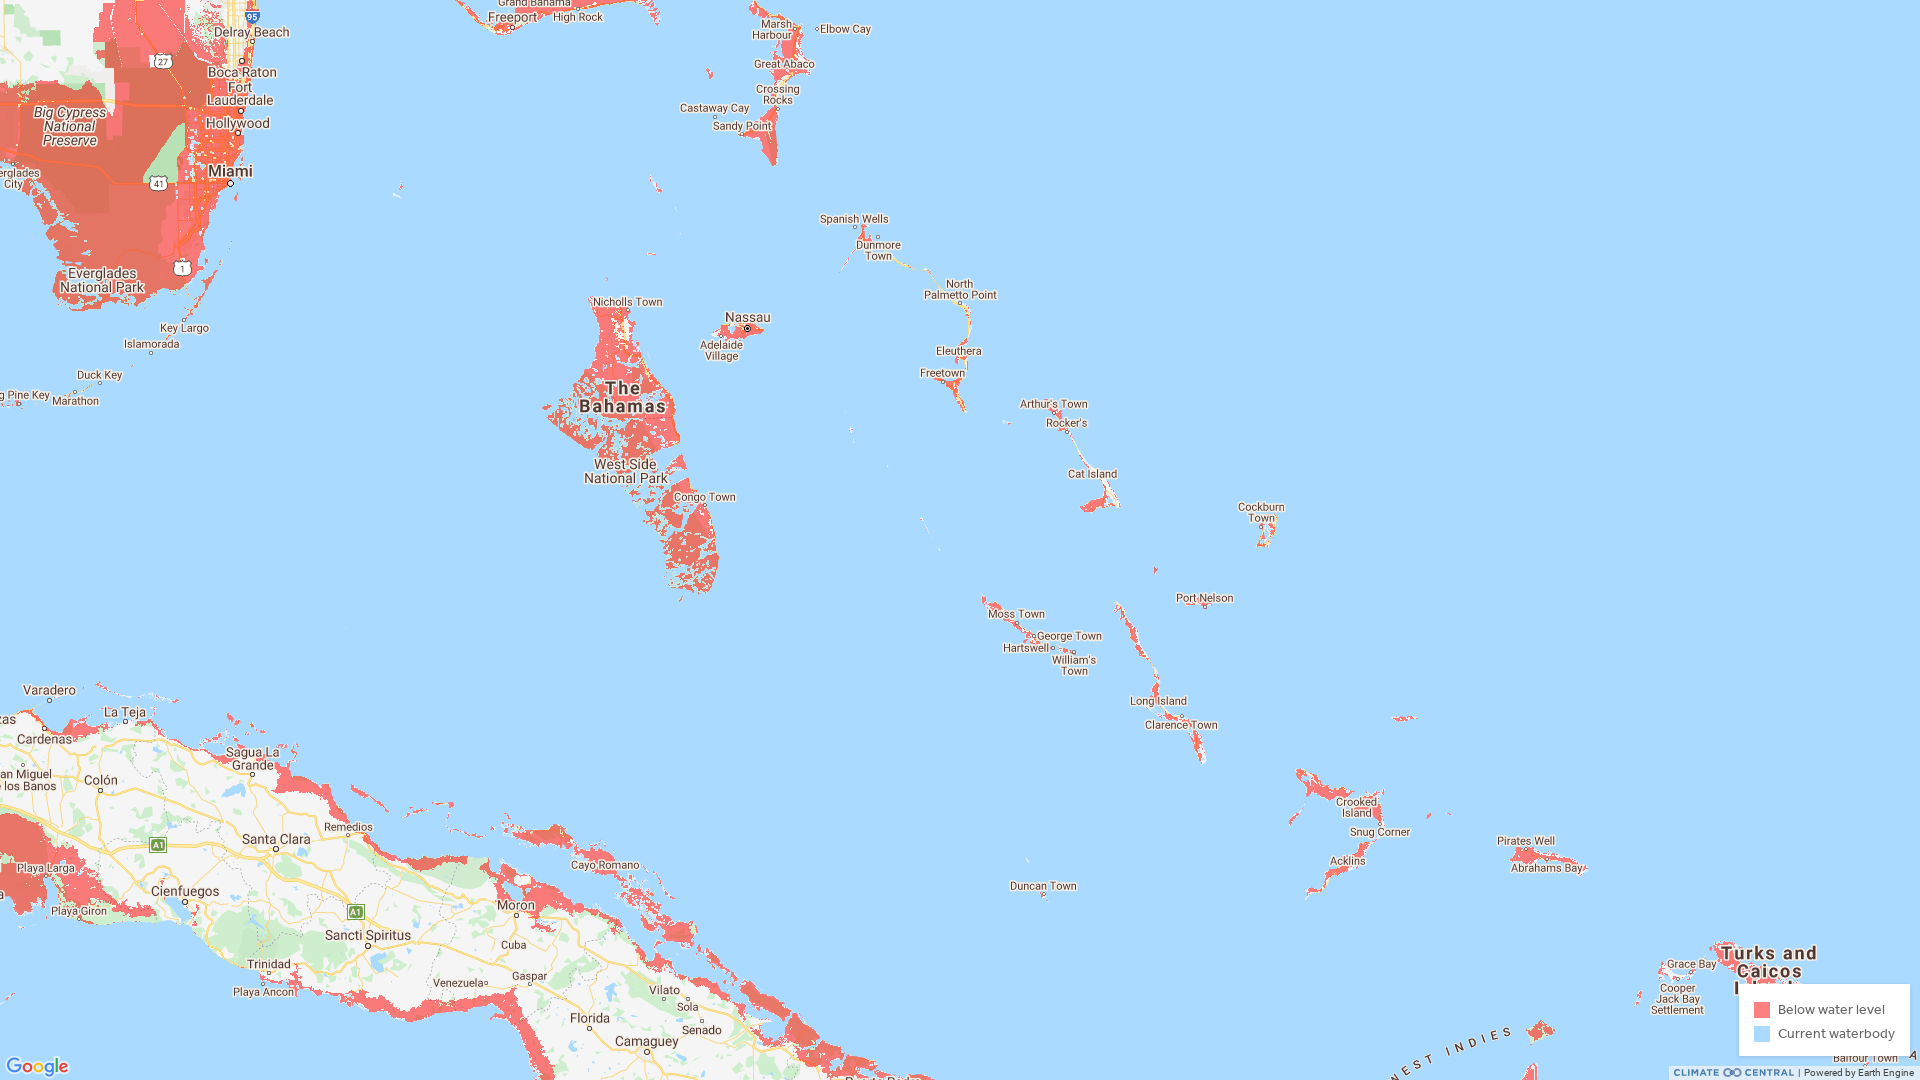 Zonas de Las Bahamas e islas aledañas más afectadas por escenarios de marea alta - Mapa por Climate Central